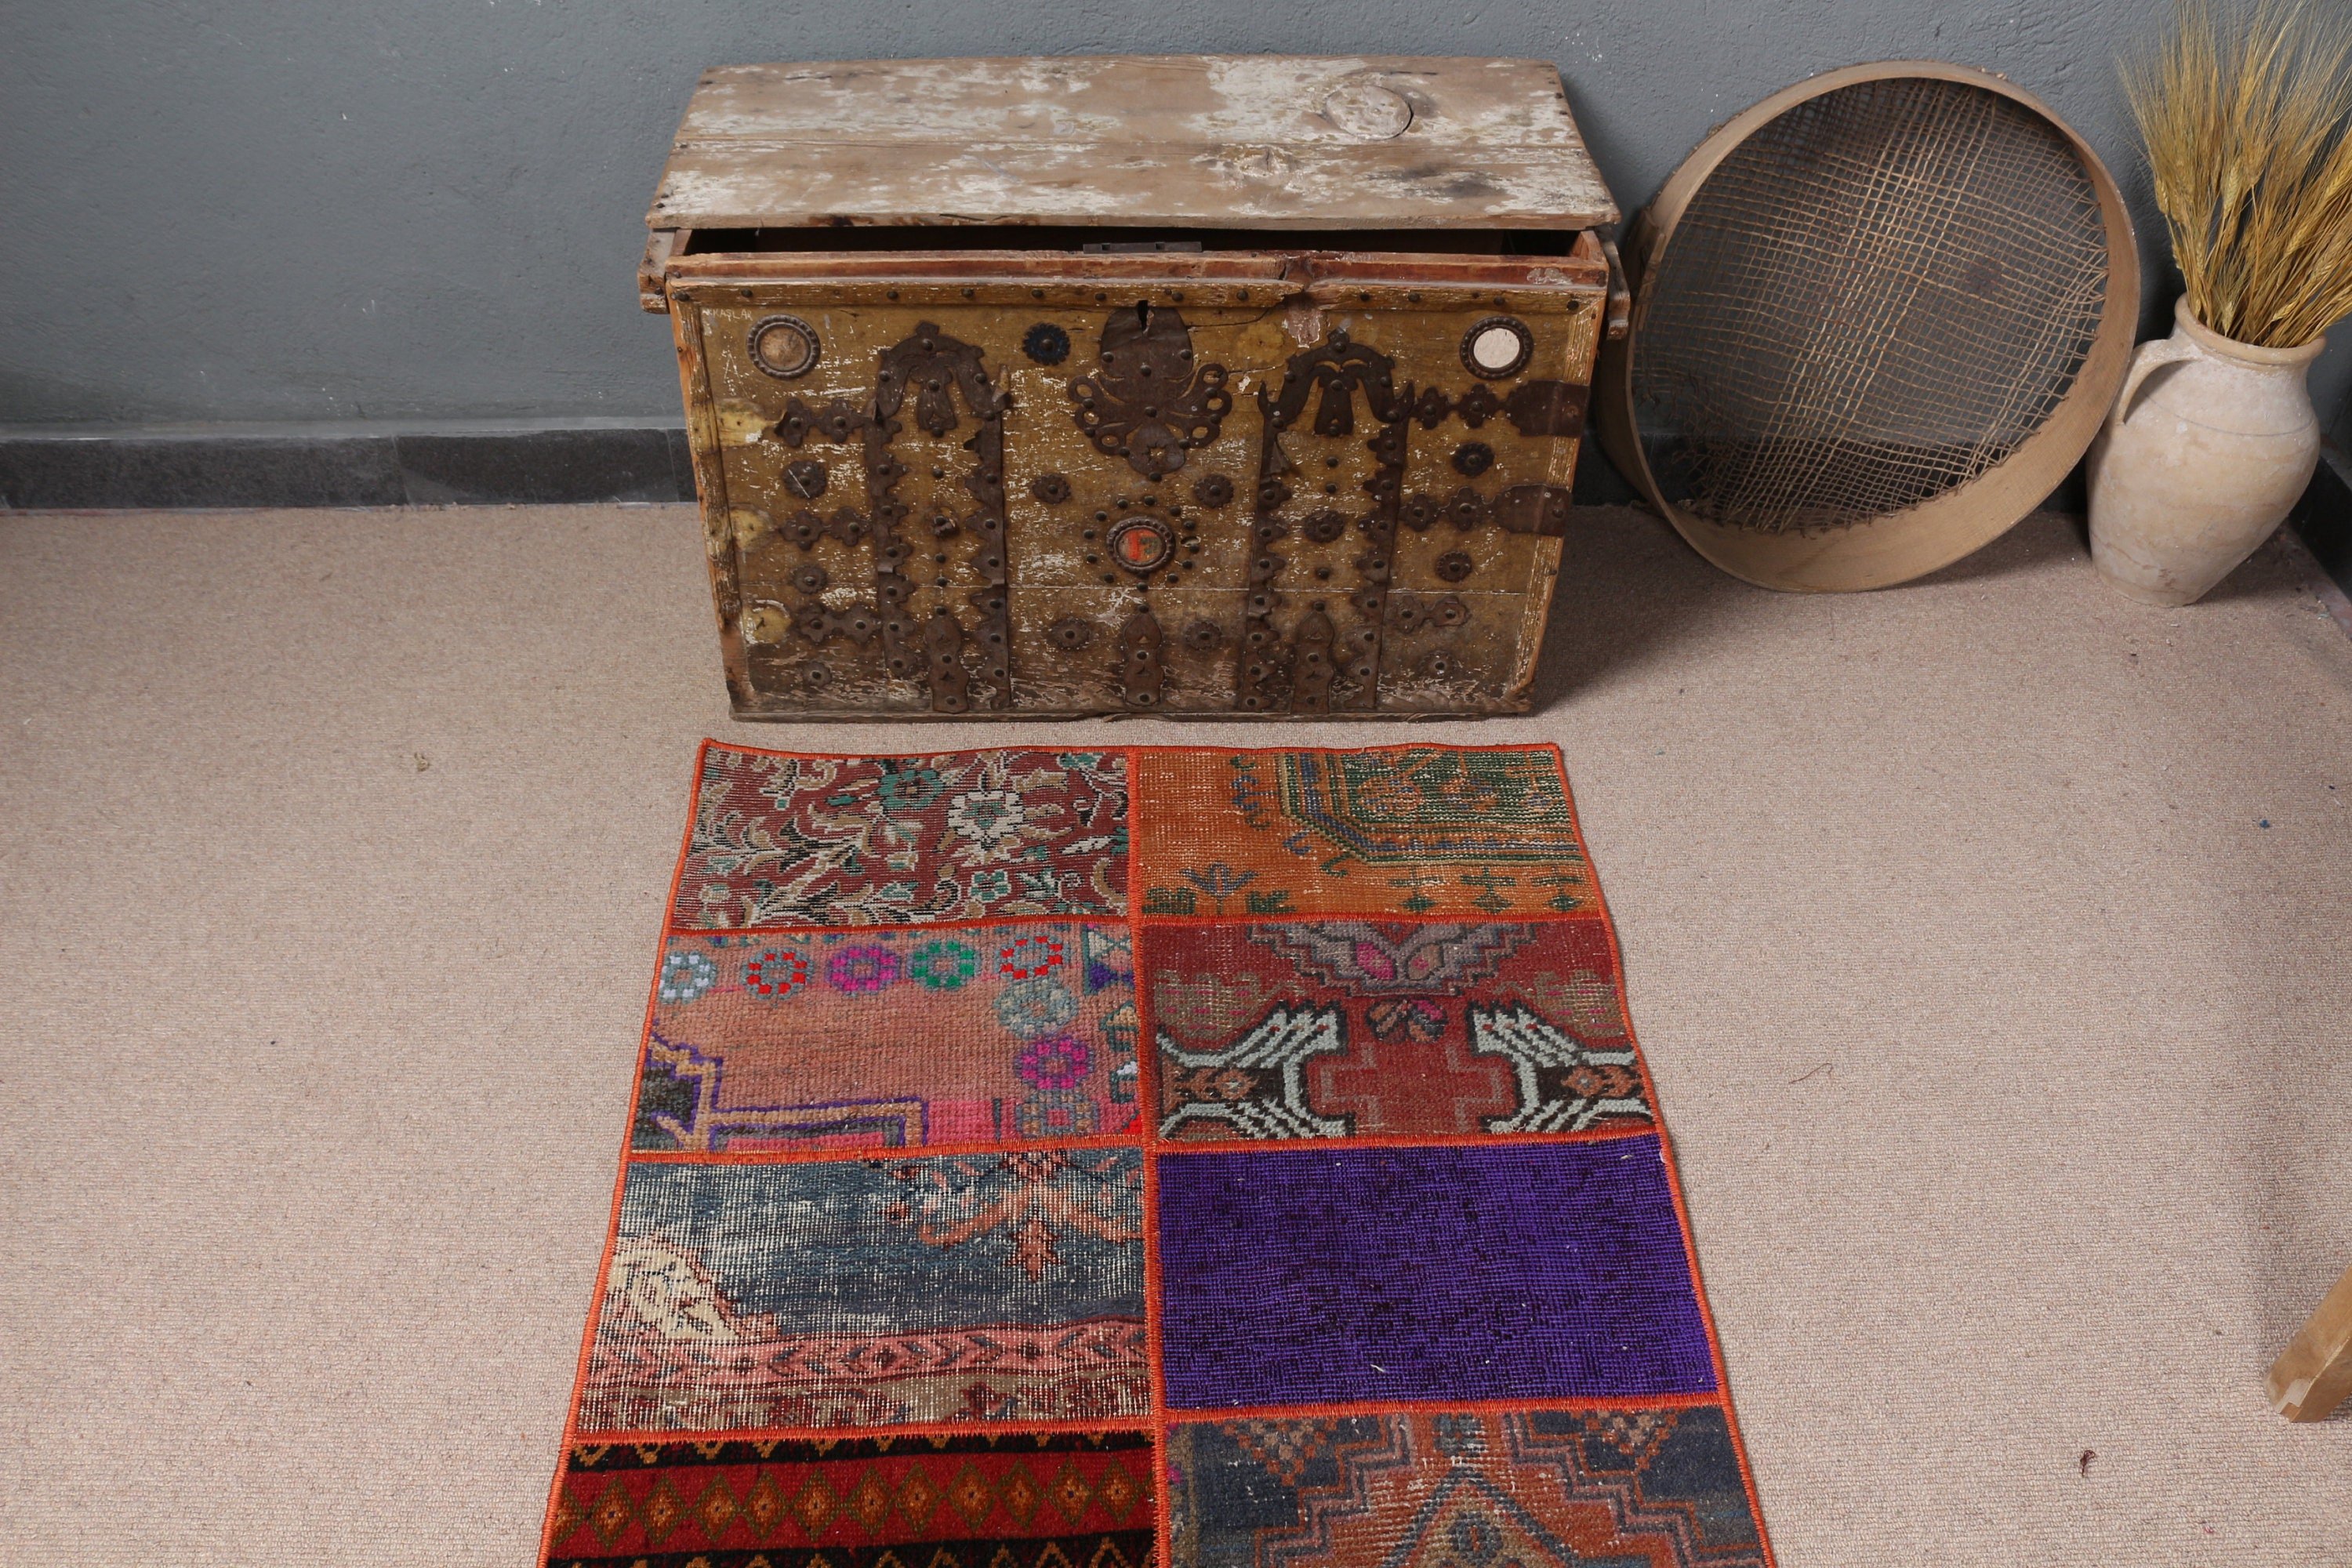 Blue Moroccan Rug, Hallway Rugs, Stair Rug, Oushak Rugs, Vintage Rug, Antique Rug, Rugs for Hallway, Turkish Rug, 2.8x7.9 ft Runner Rug